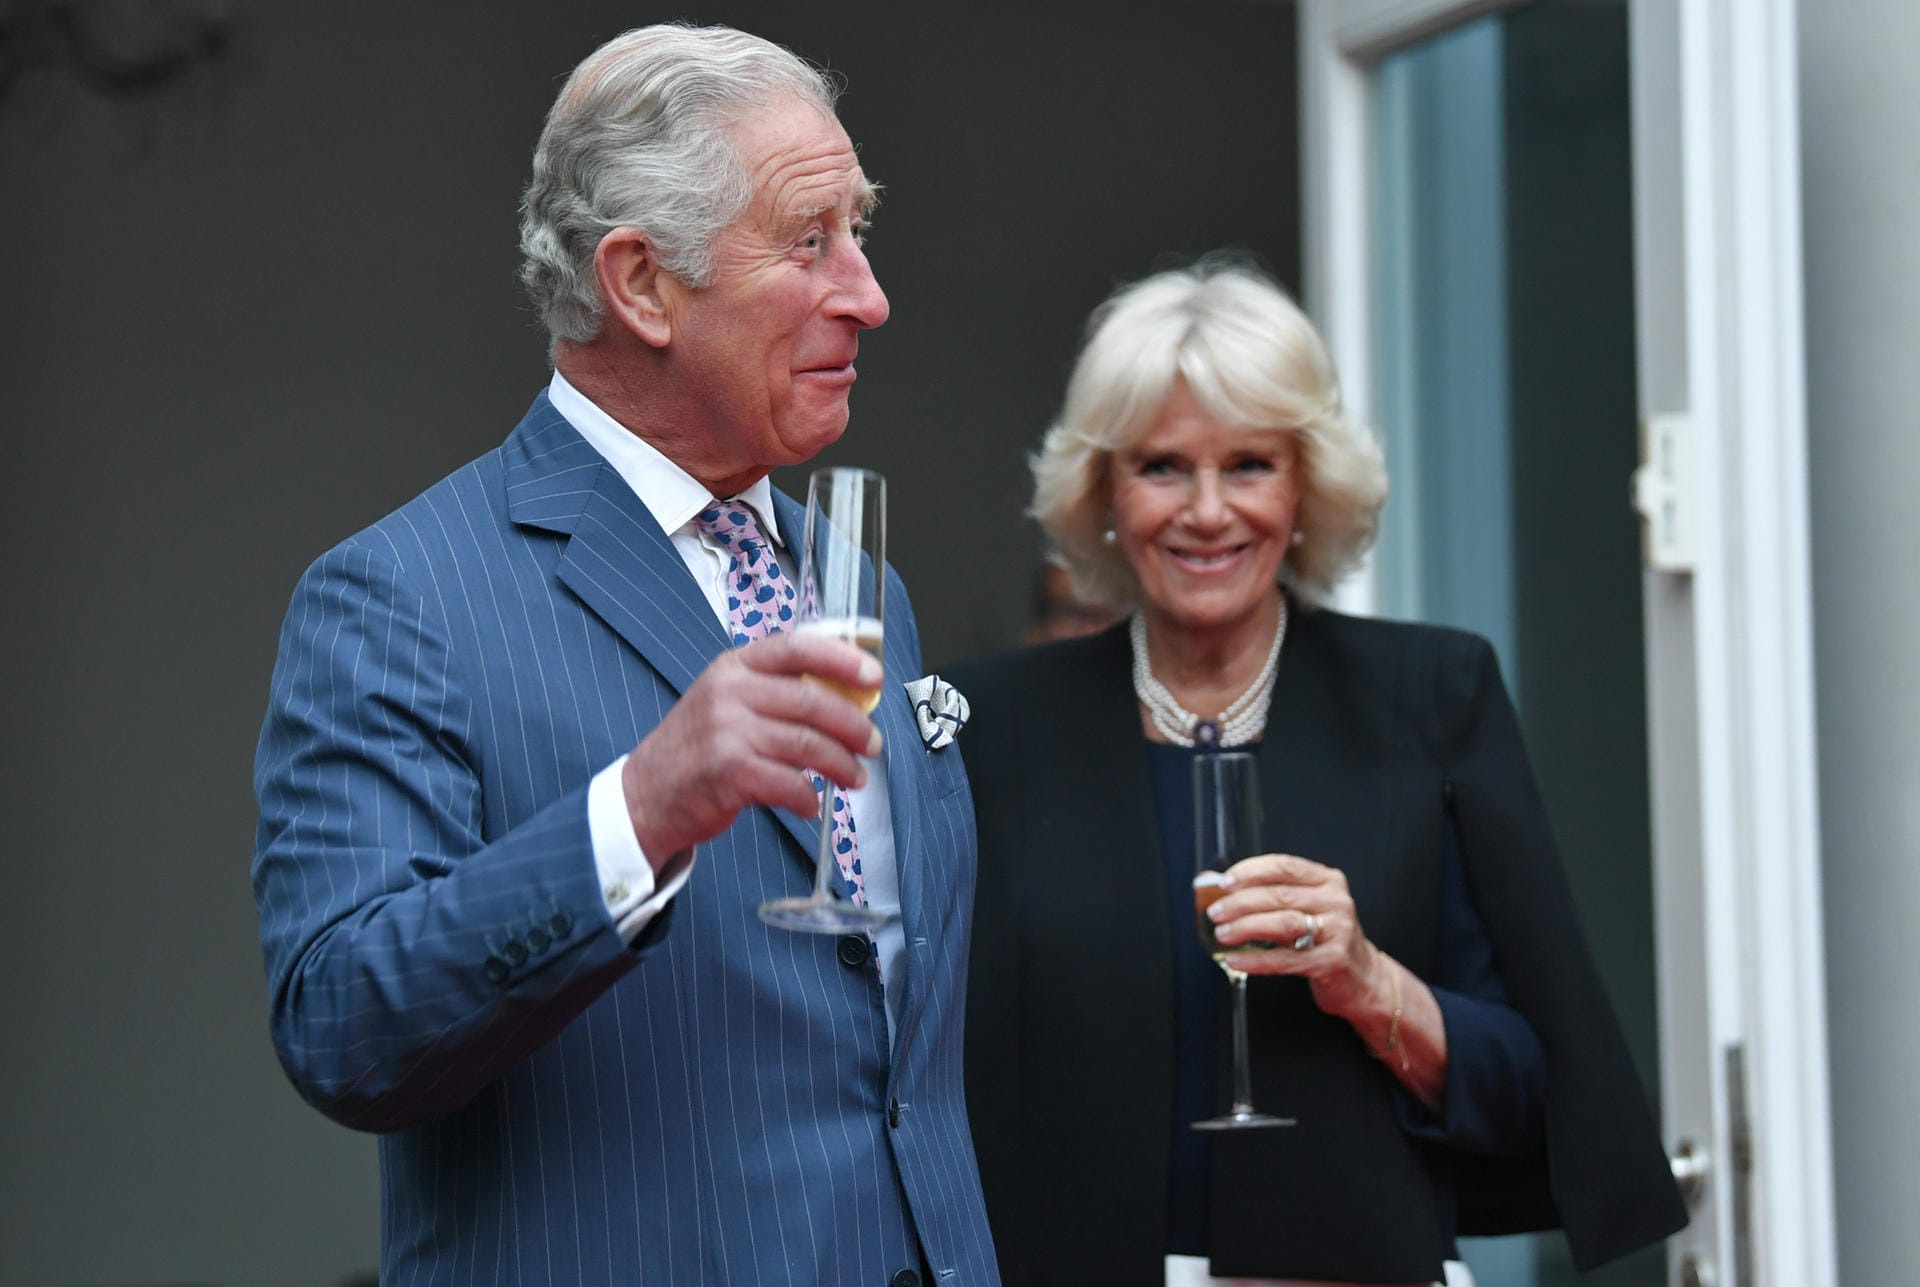 Am Abend feierten die beiden in Grunewald den Geburtstag der Queen – ausgerichtet wurde die Feier vom britischen Botschafter Sir Sebastian Wood.